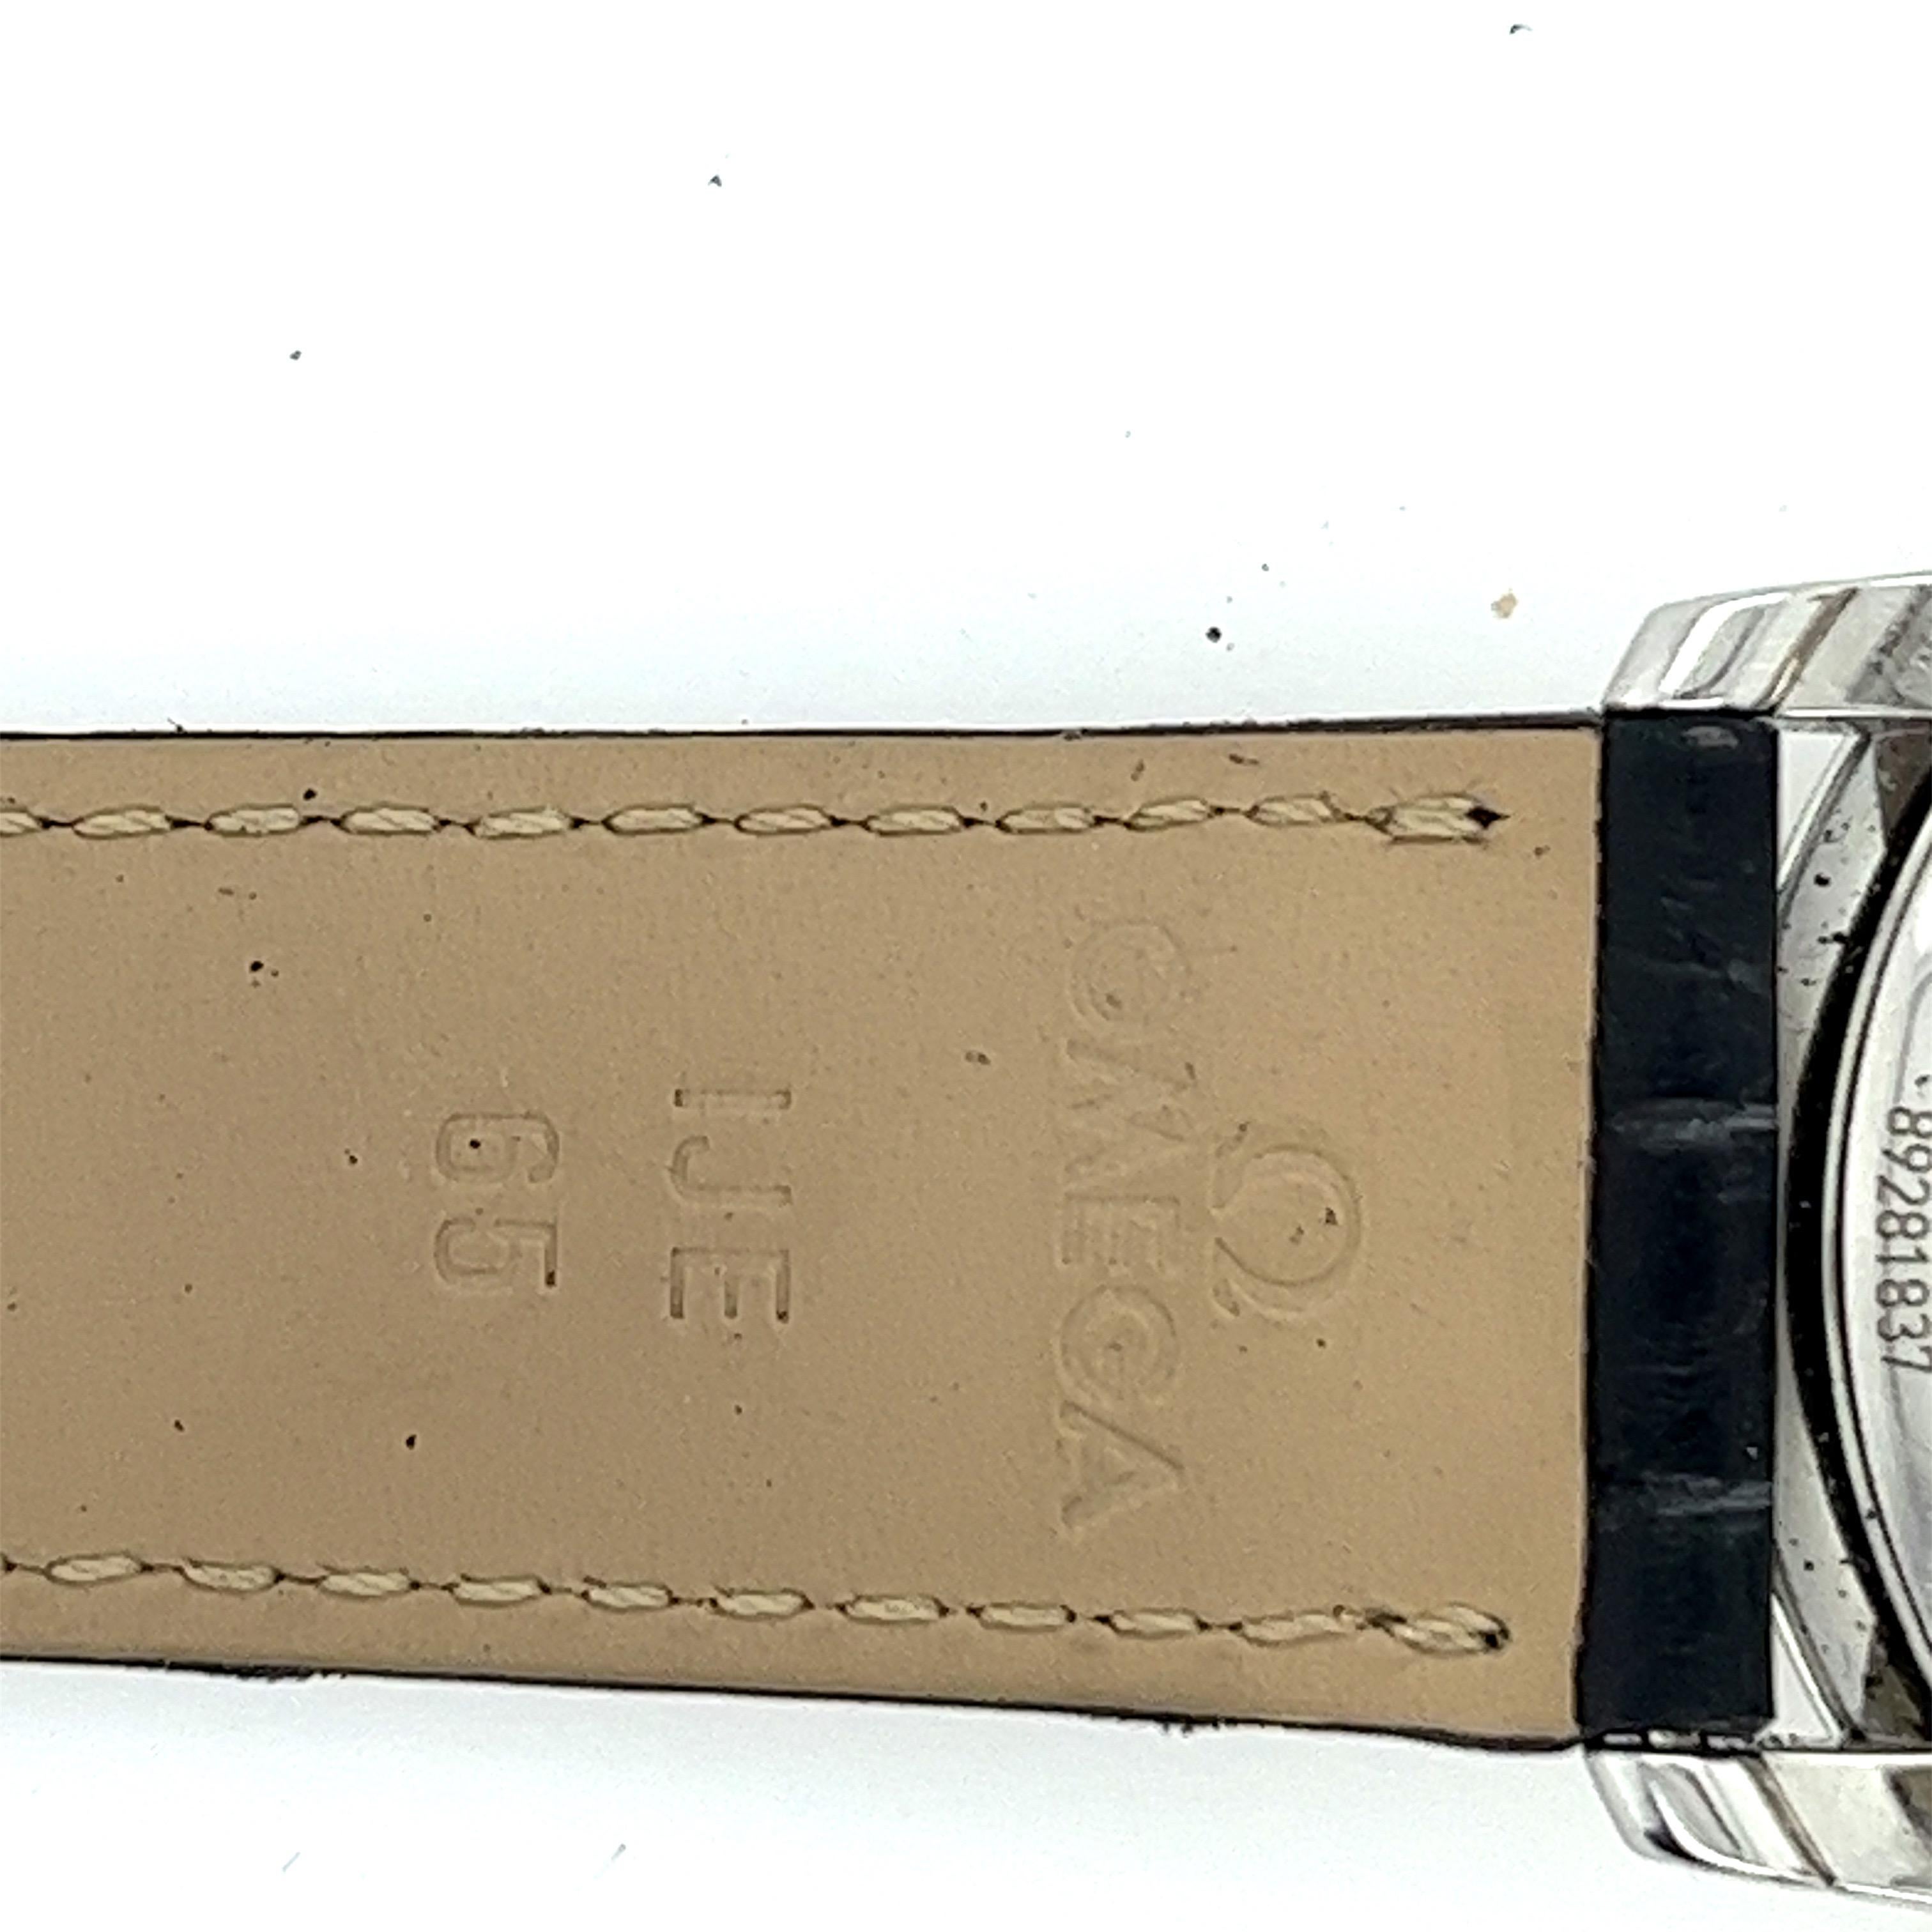 Omega De Ville Prestige comme neuve. Cette superbe montre est dotée d'un bracelet en alligator noir véritable ref 9800043 et est réglable jusqu'à un poignet de 8 pouces. Il est doté d'une boucle en acier.  et deux porte-bracelet en alligator. Elle